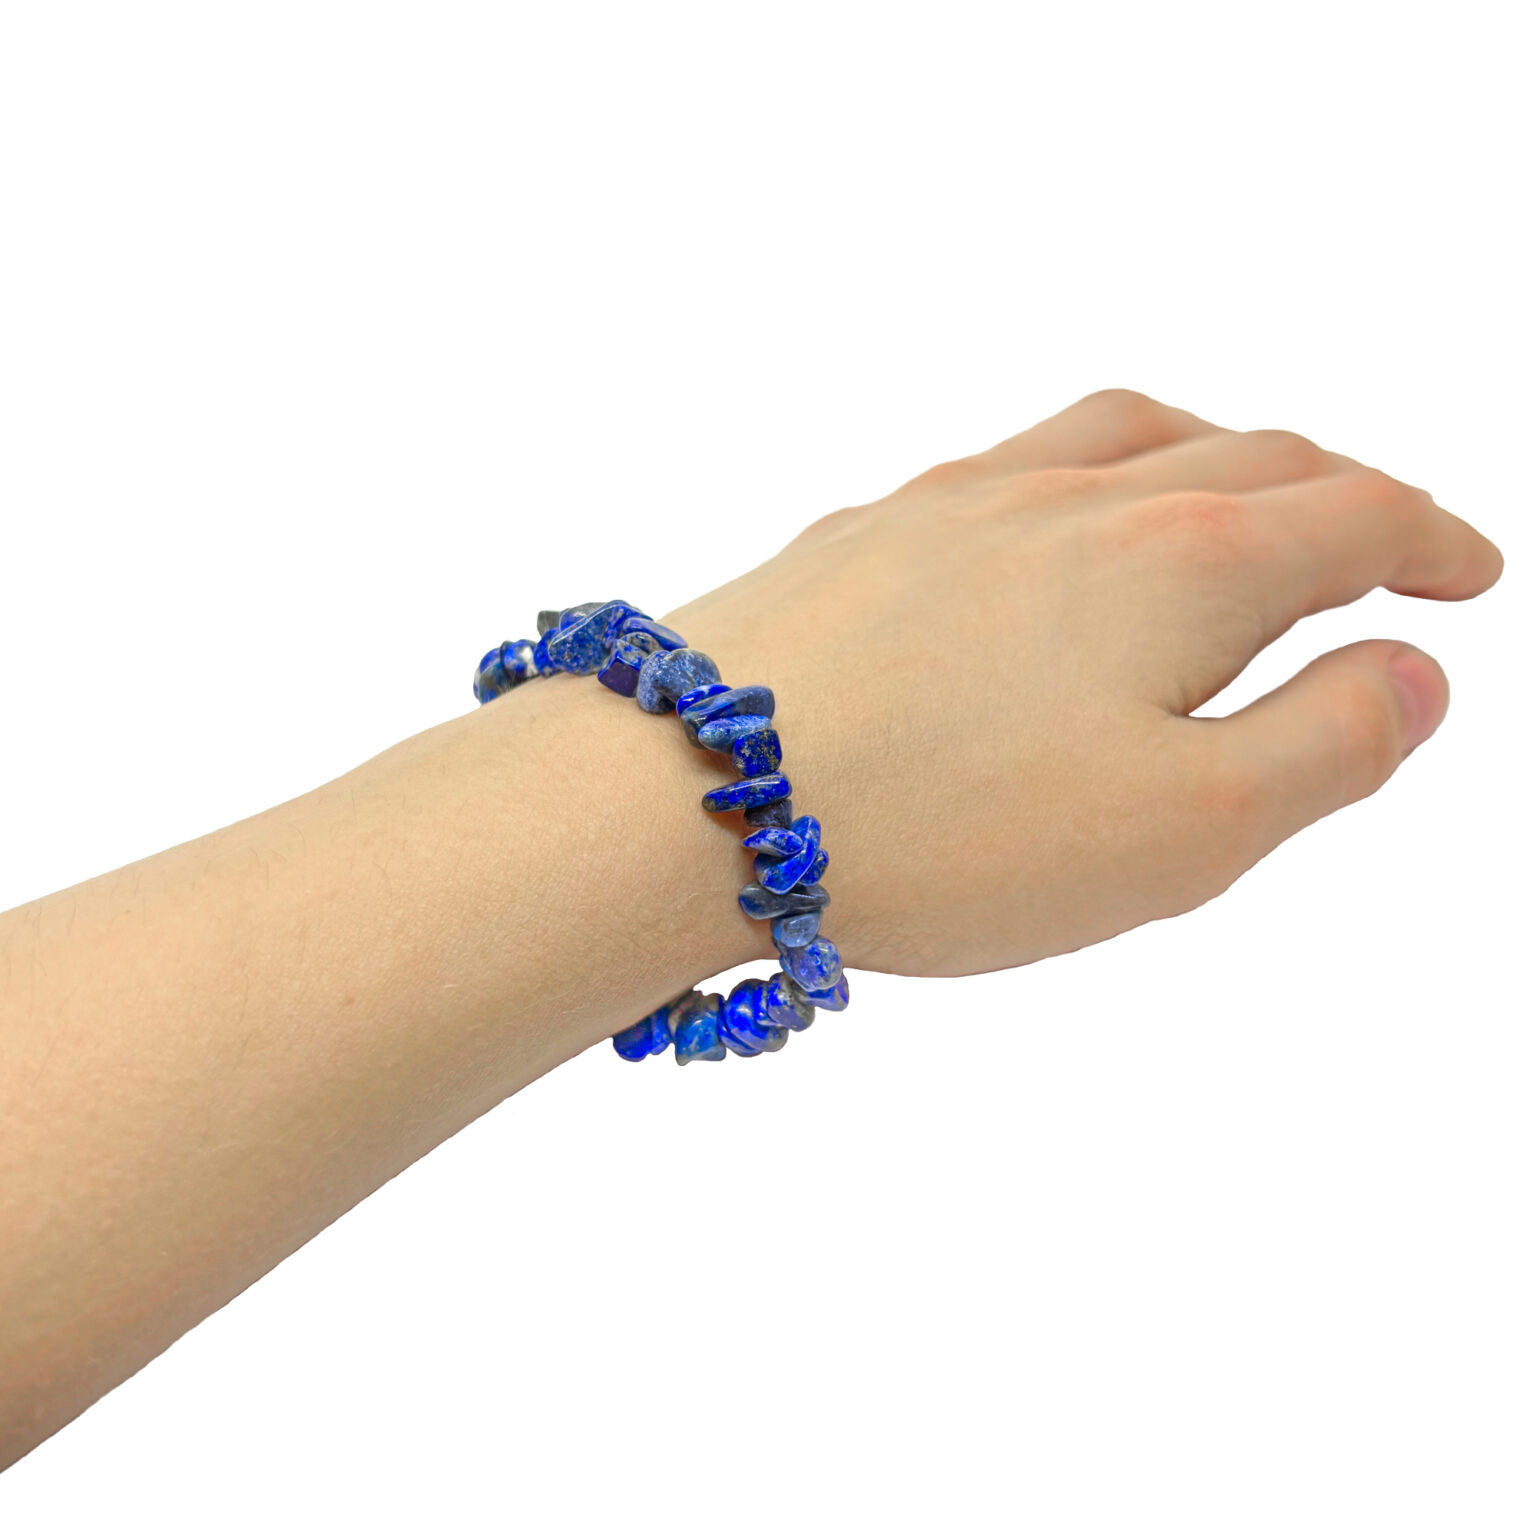 Intensiv blaues Splitterarmband aus gebohrten Lapislazuli Steinen. Das Armband wird von einer Frau getragen.